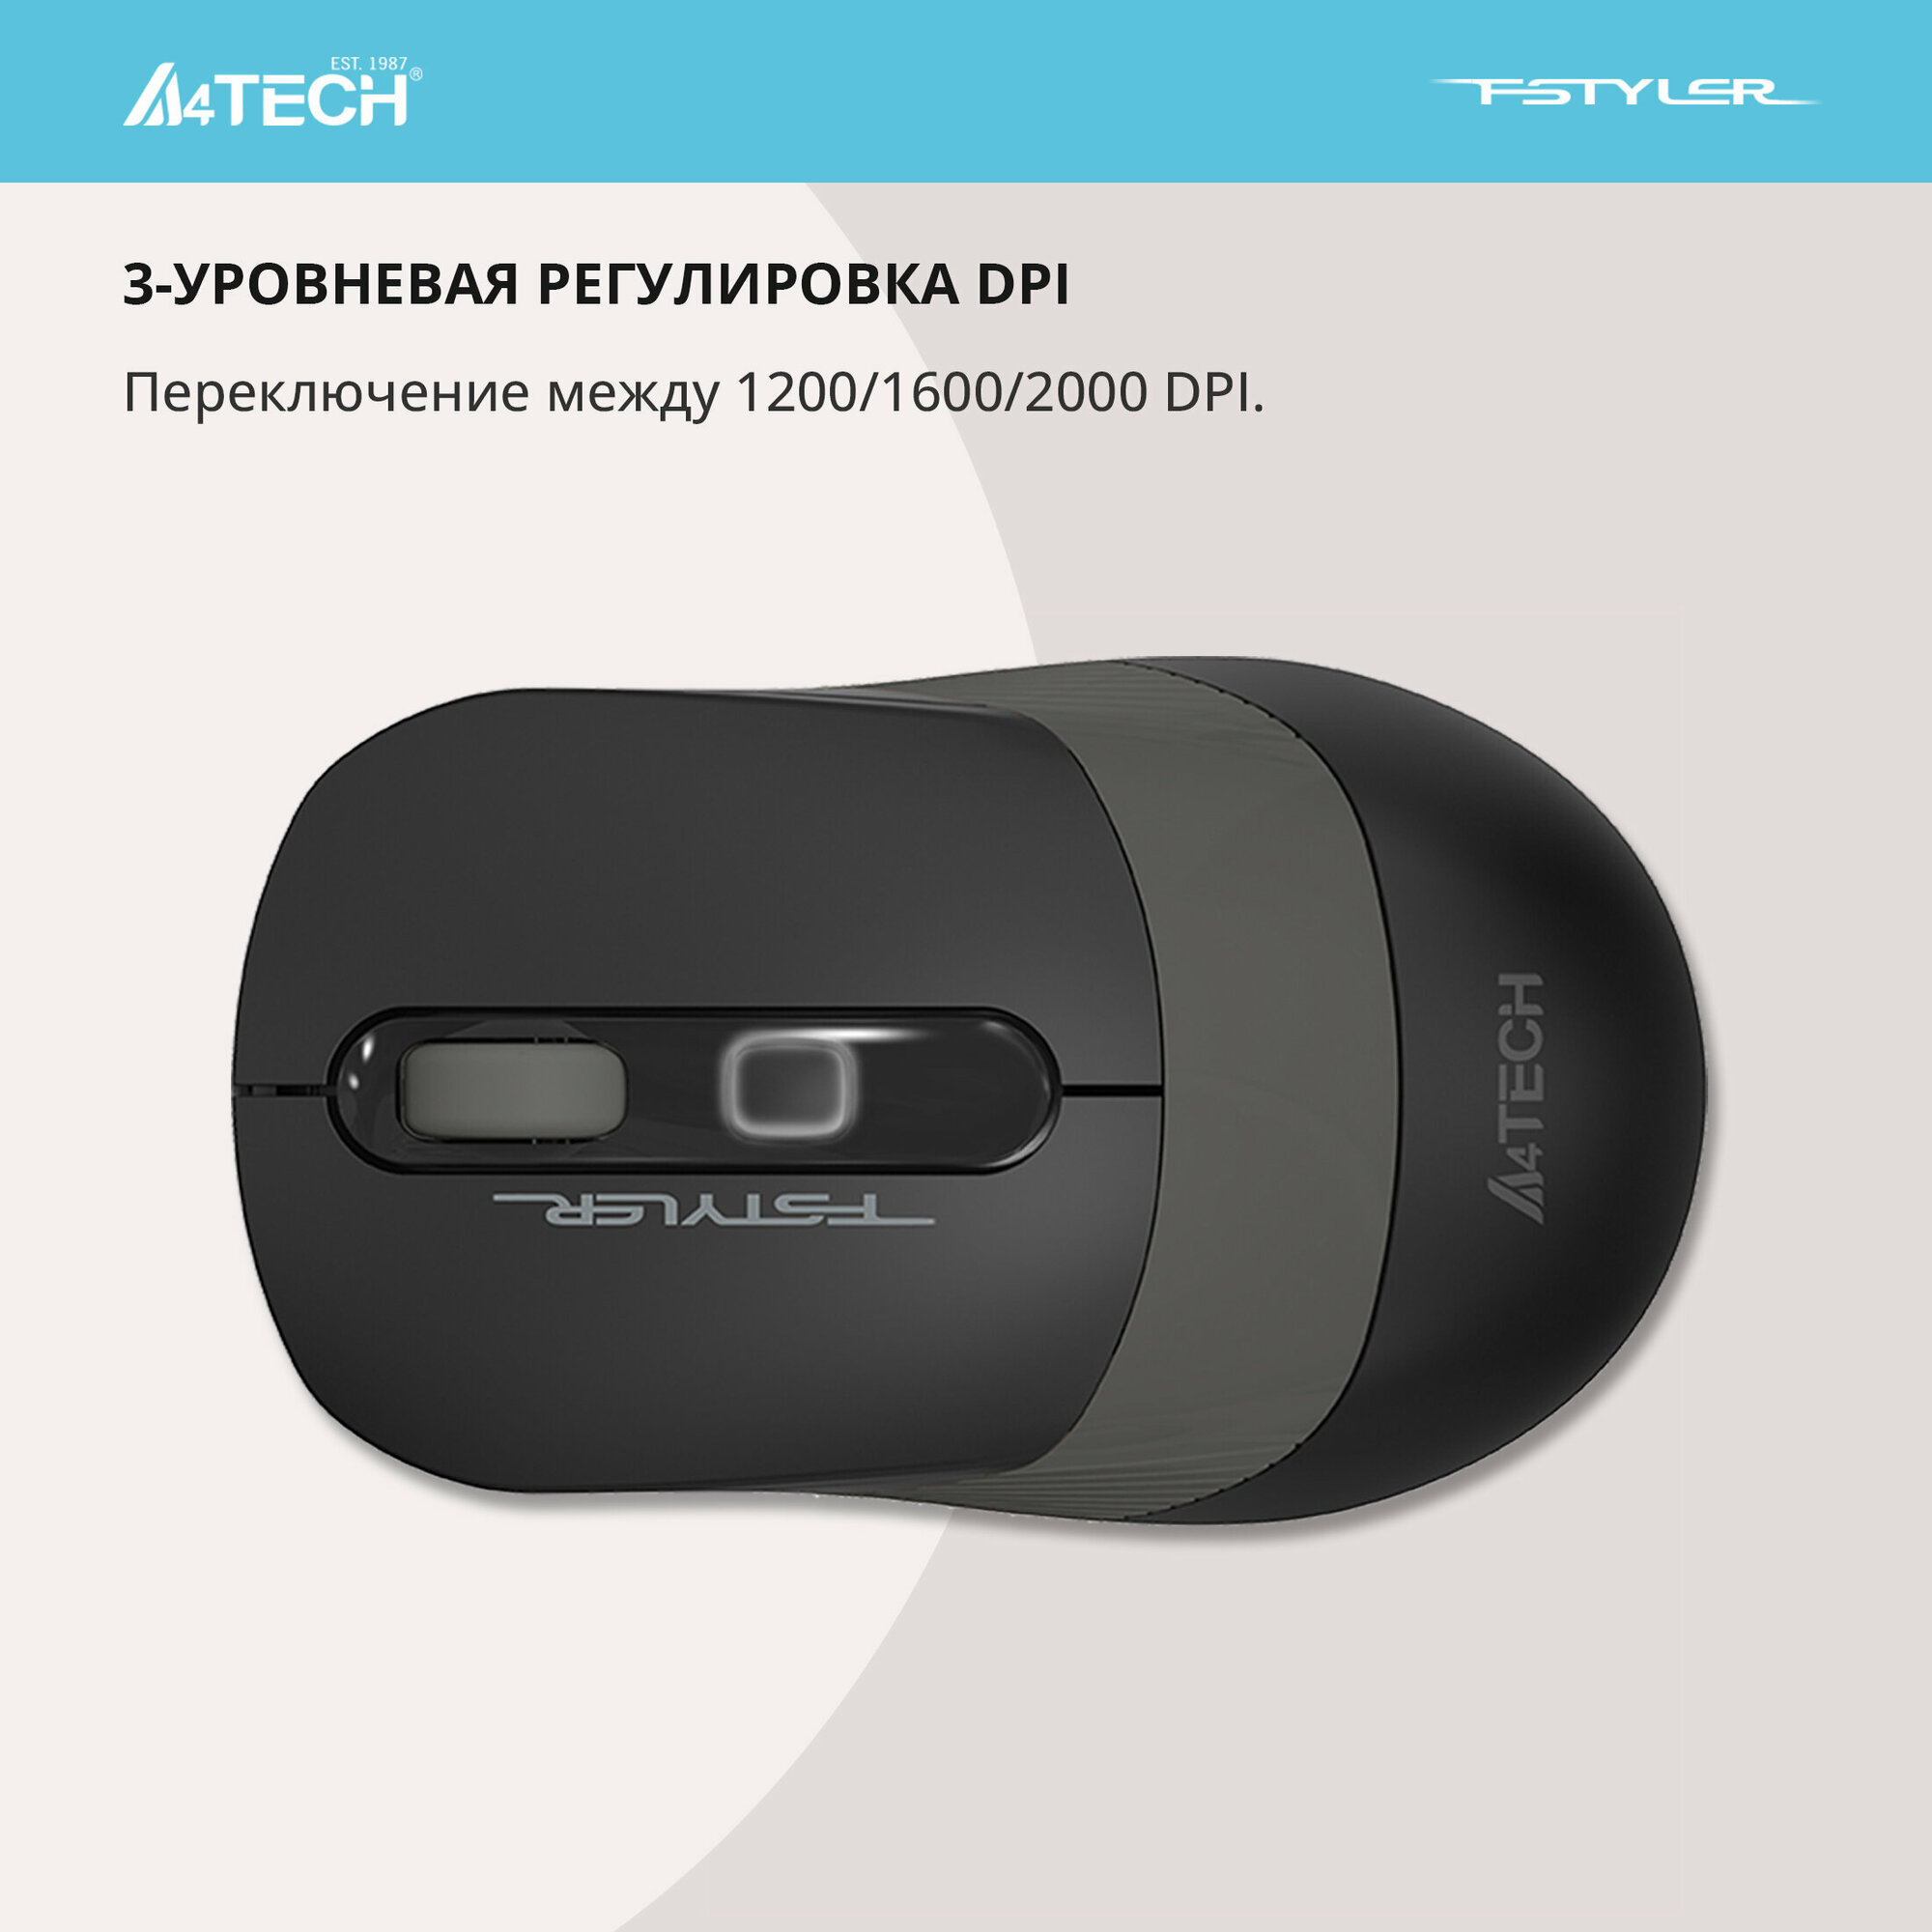 Мышь A4 Fstyler FG10S черный/серый оптическая (2000dpi) silent беспроводная USB (4but)